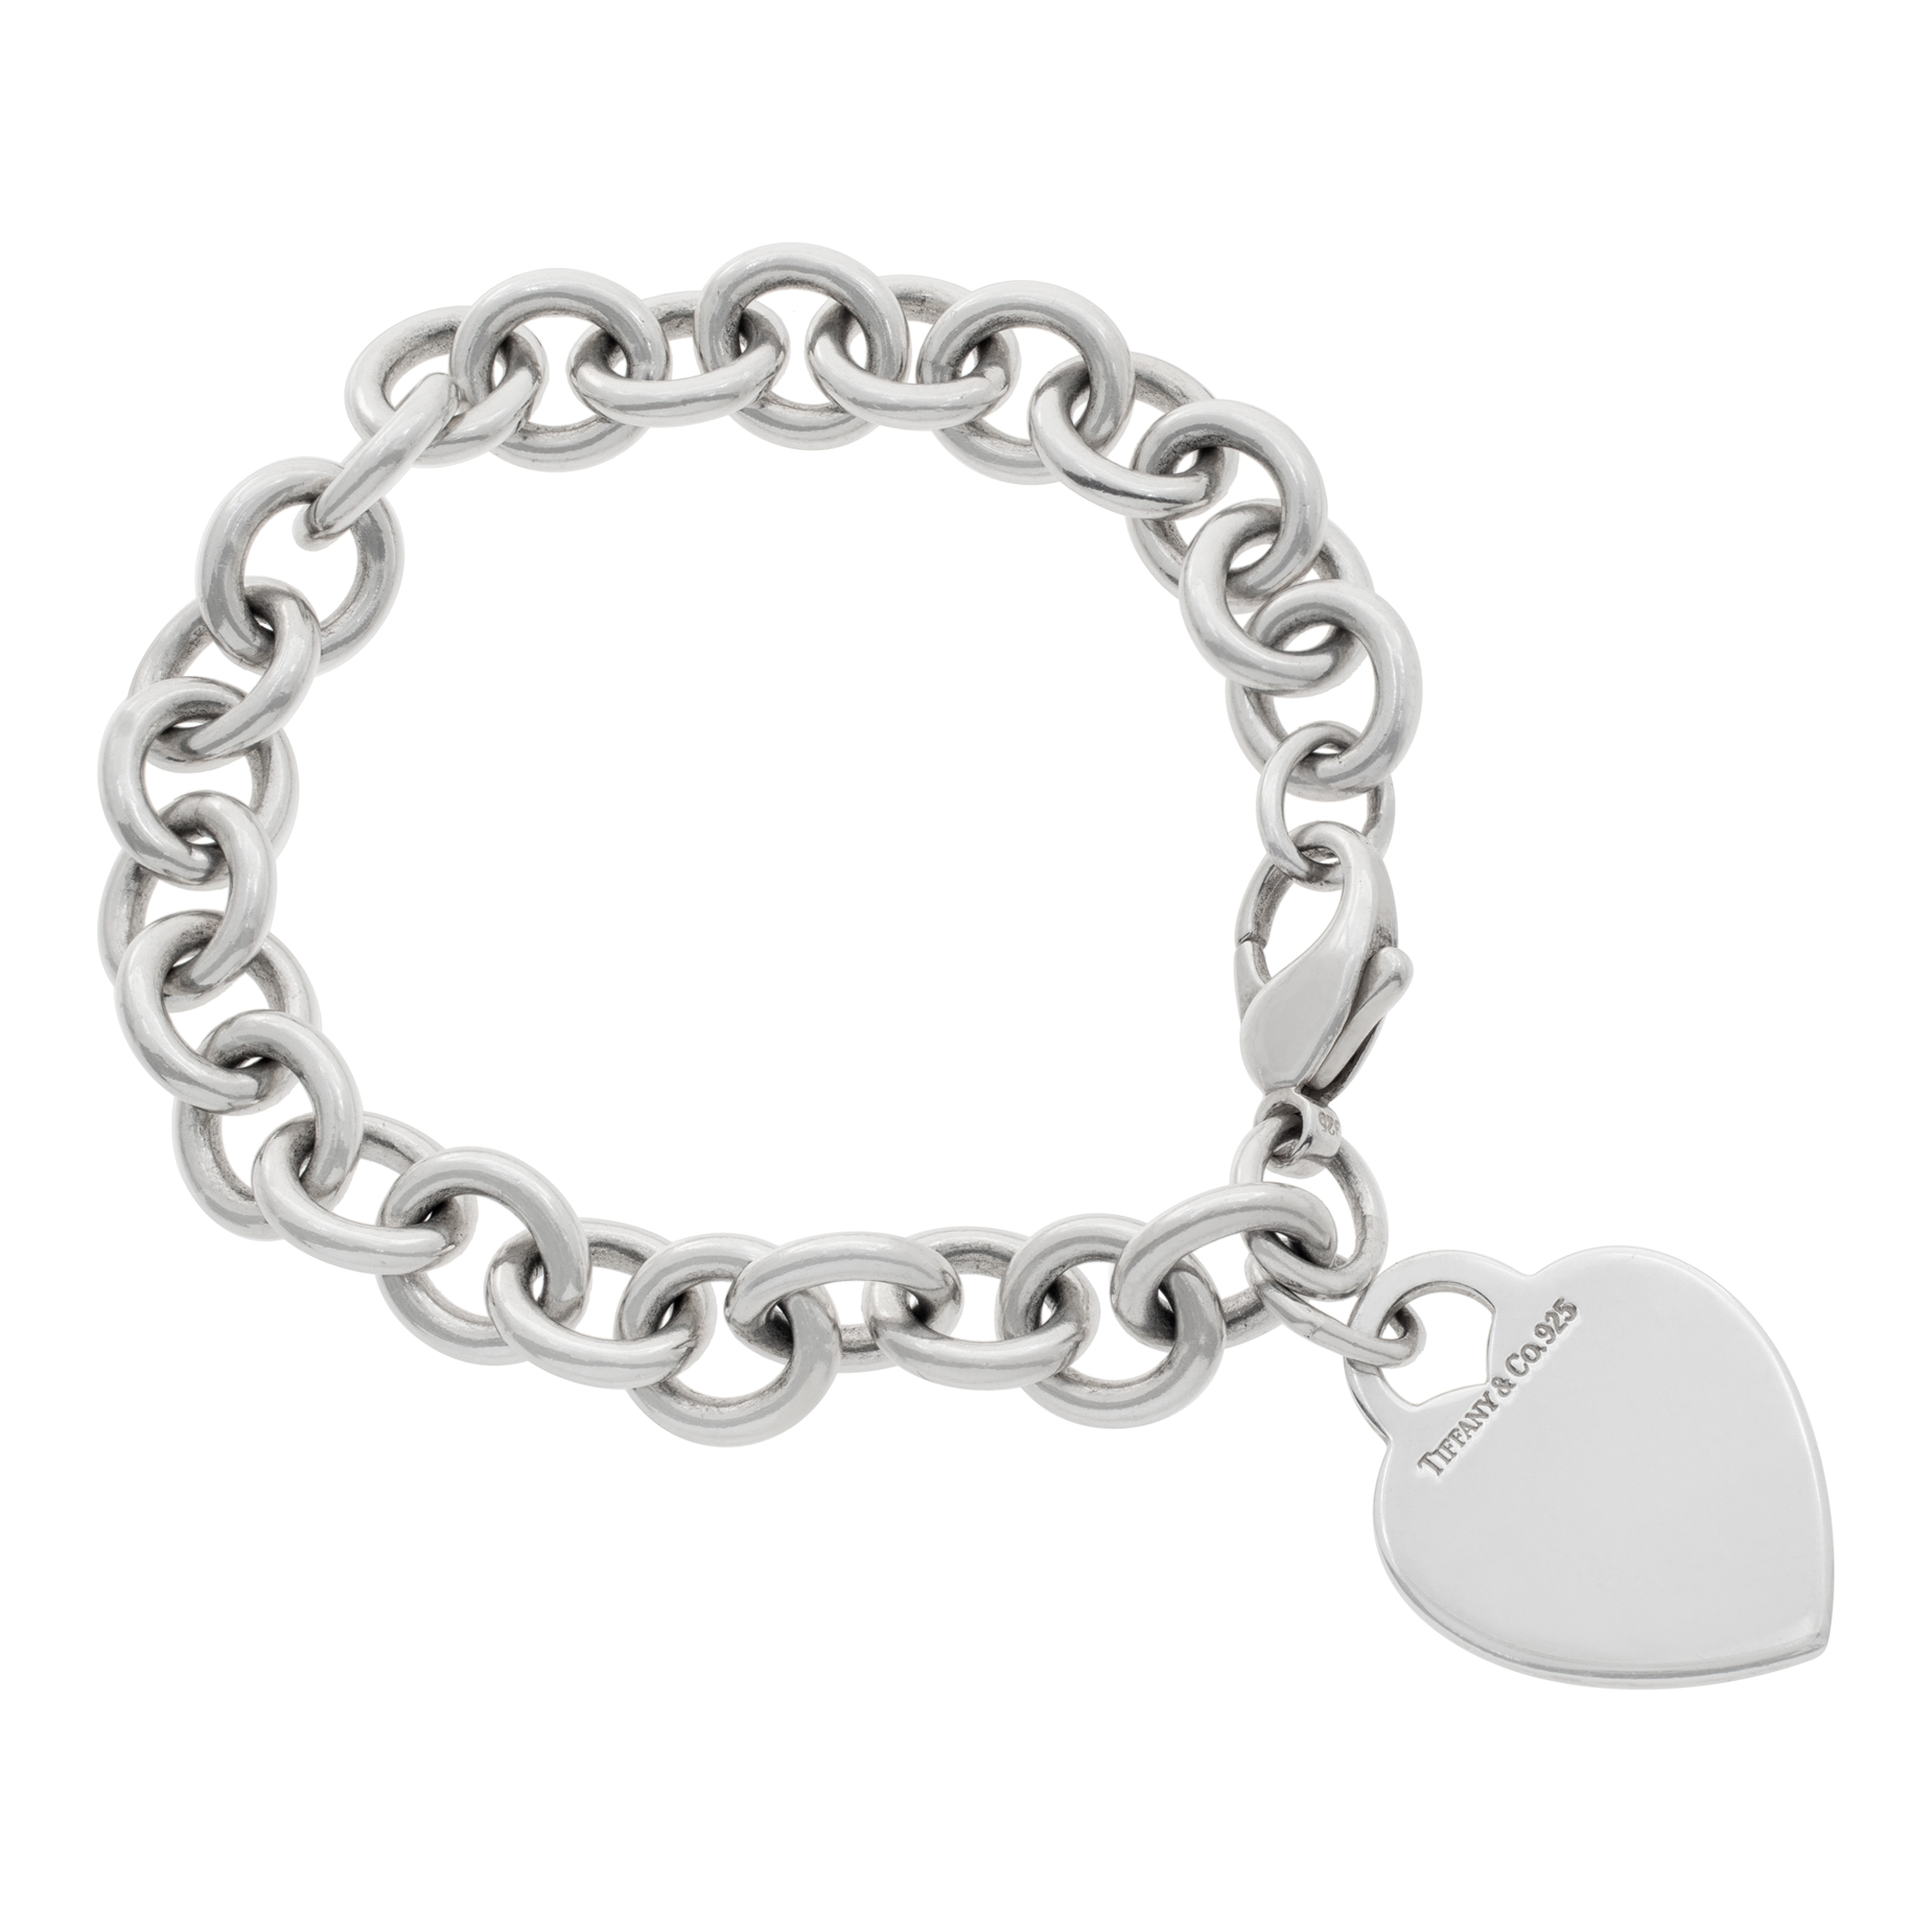 Tiffany & Co. heart pendant chain bracelet in sterling silver